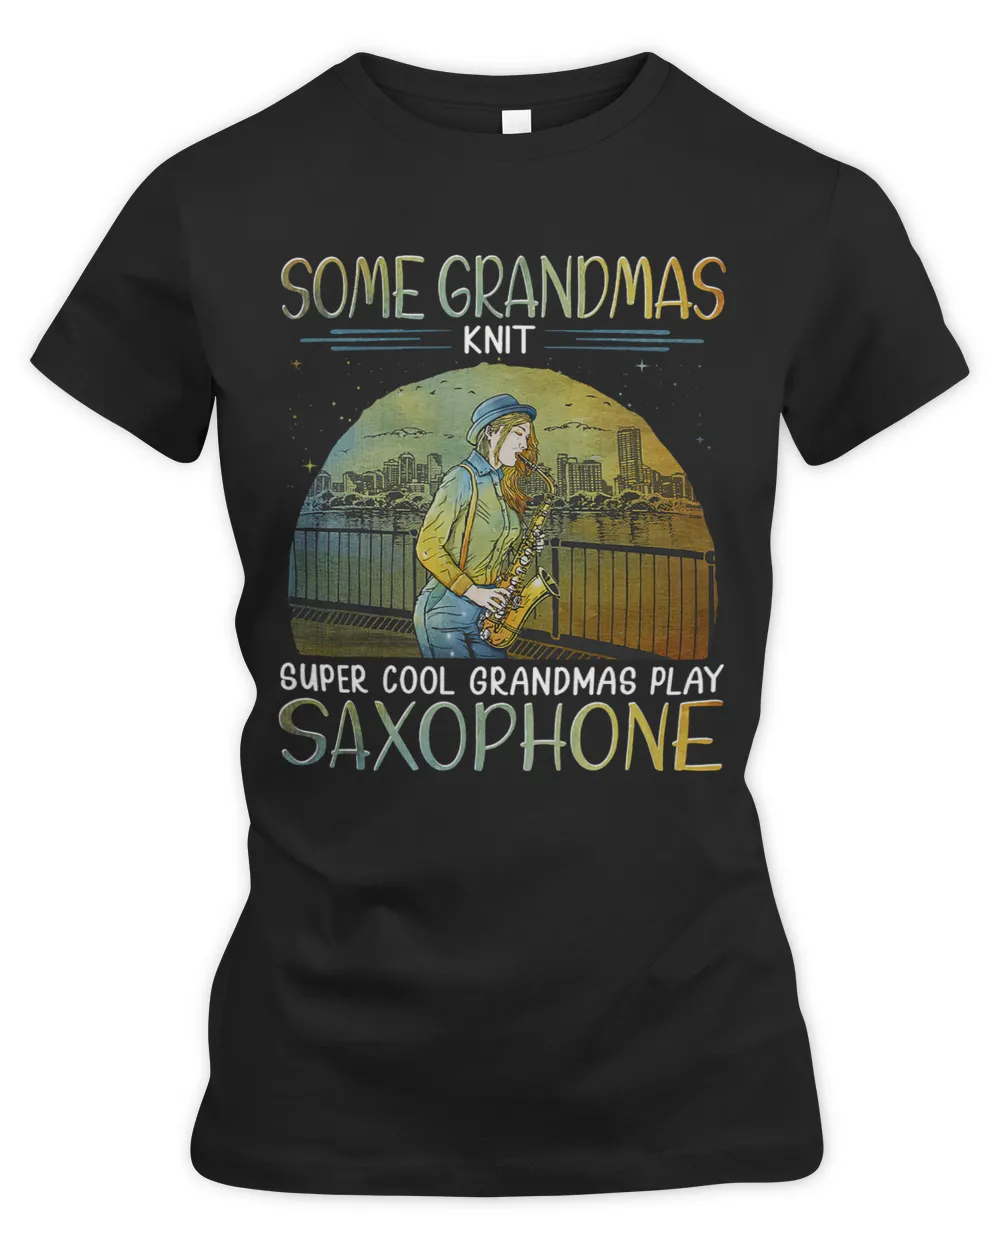 Some grandmas knit cool grandmas play saxophone